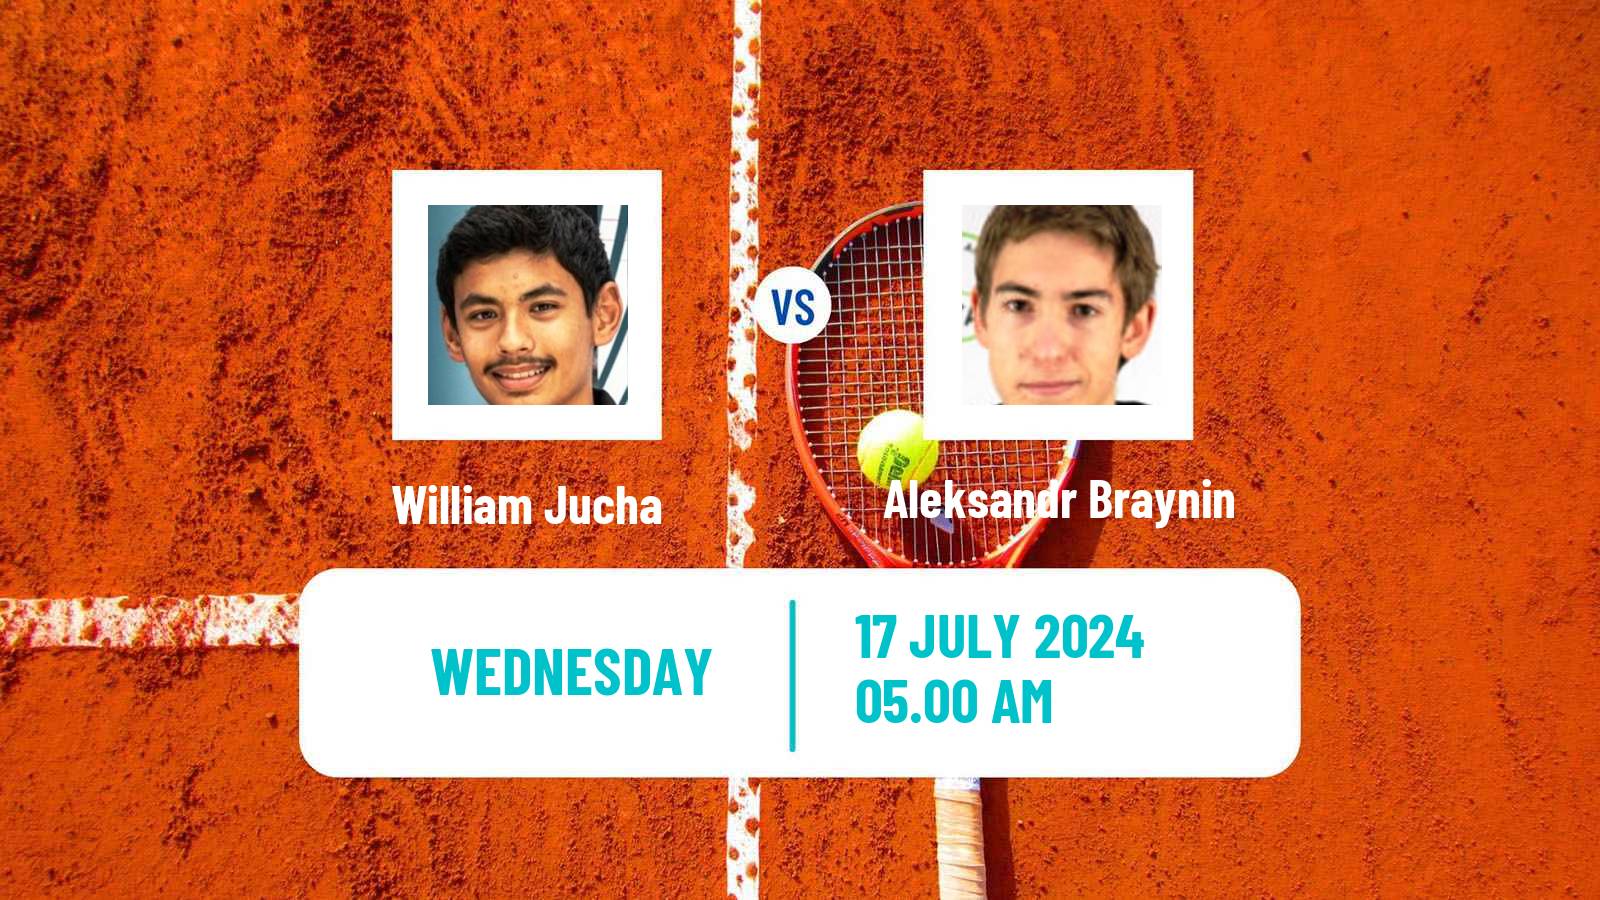 Tennis ITF M25 Castelo Branco Men William Jucha - Aleksandr Braynin